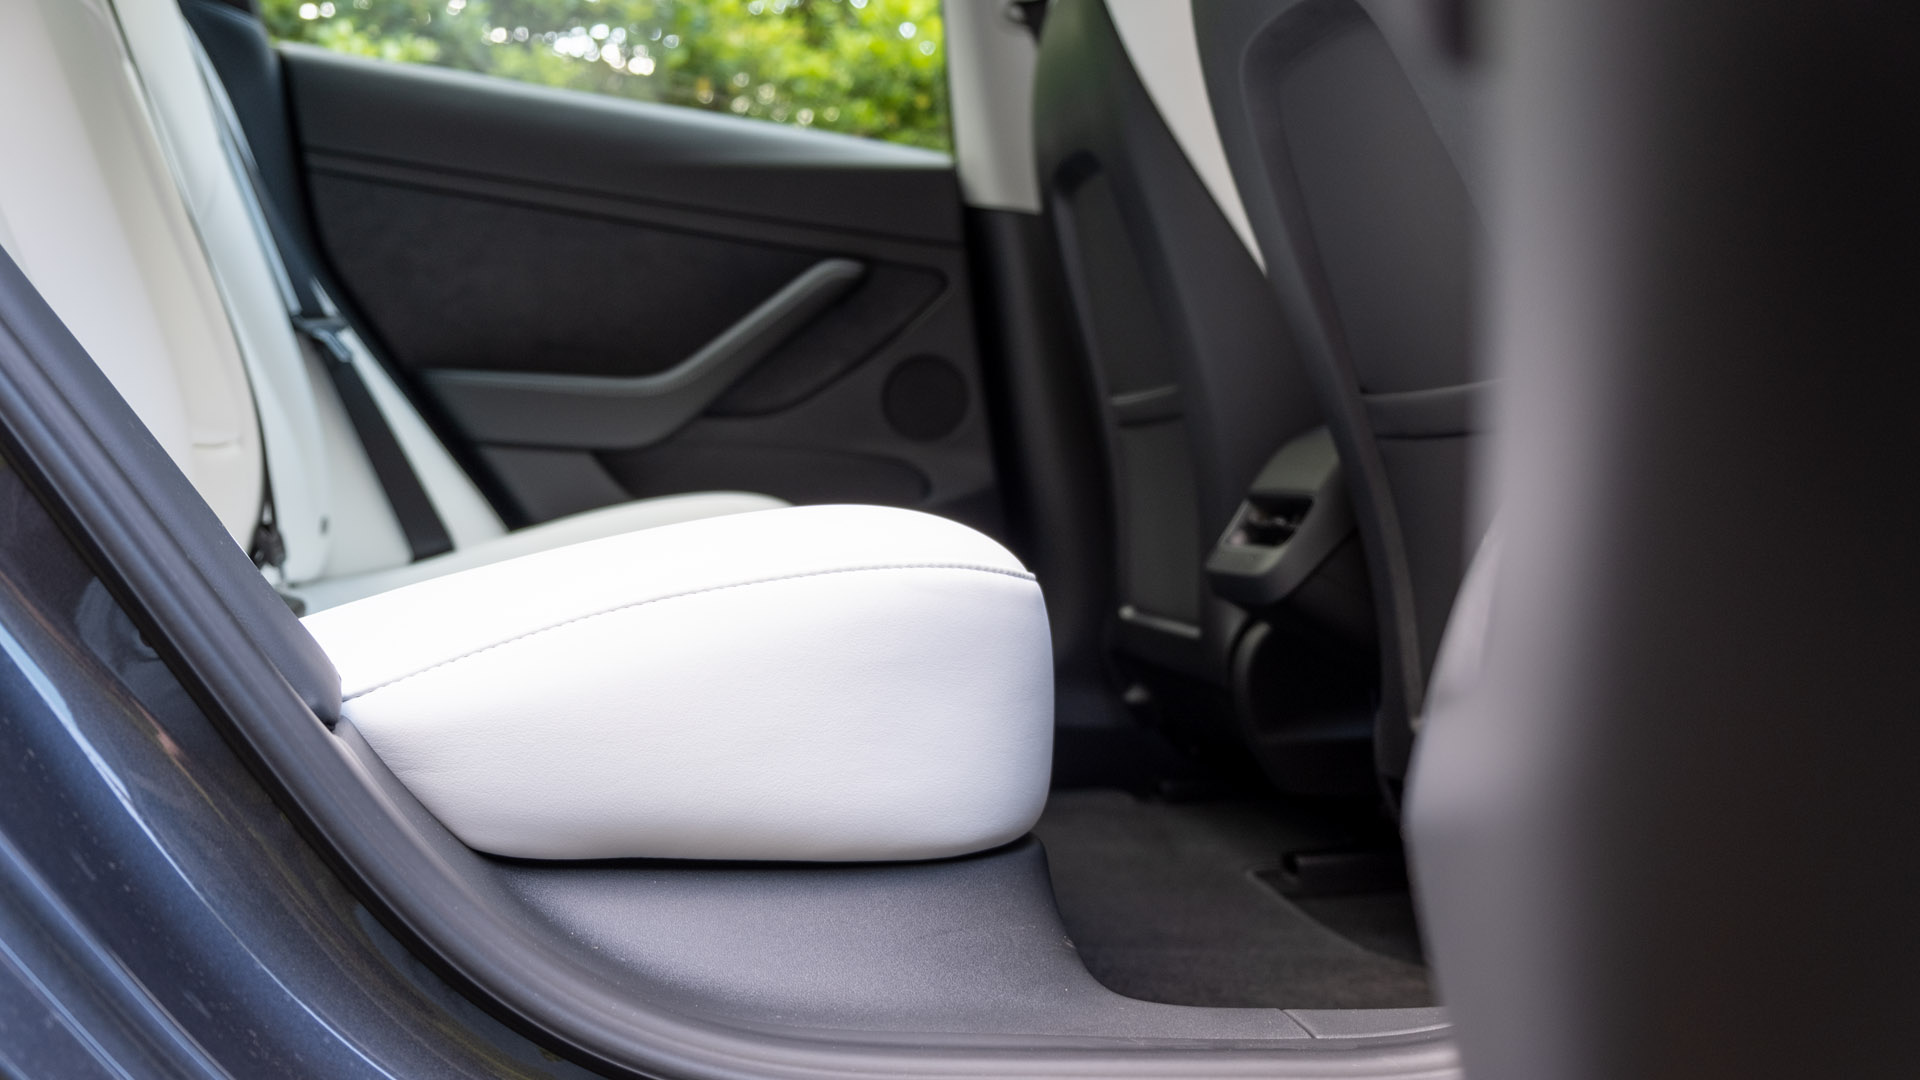 Tesla Model 3 rear seat space